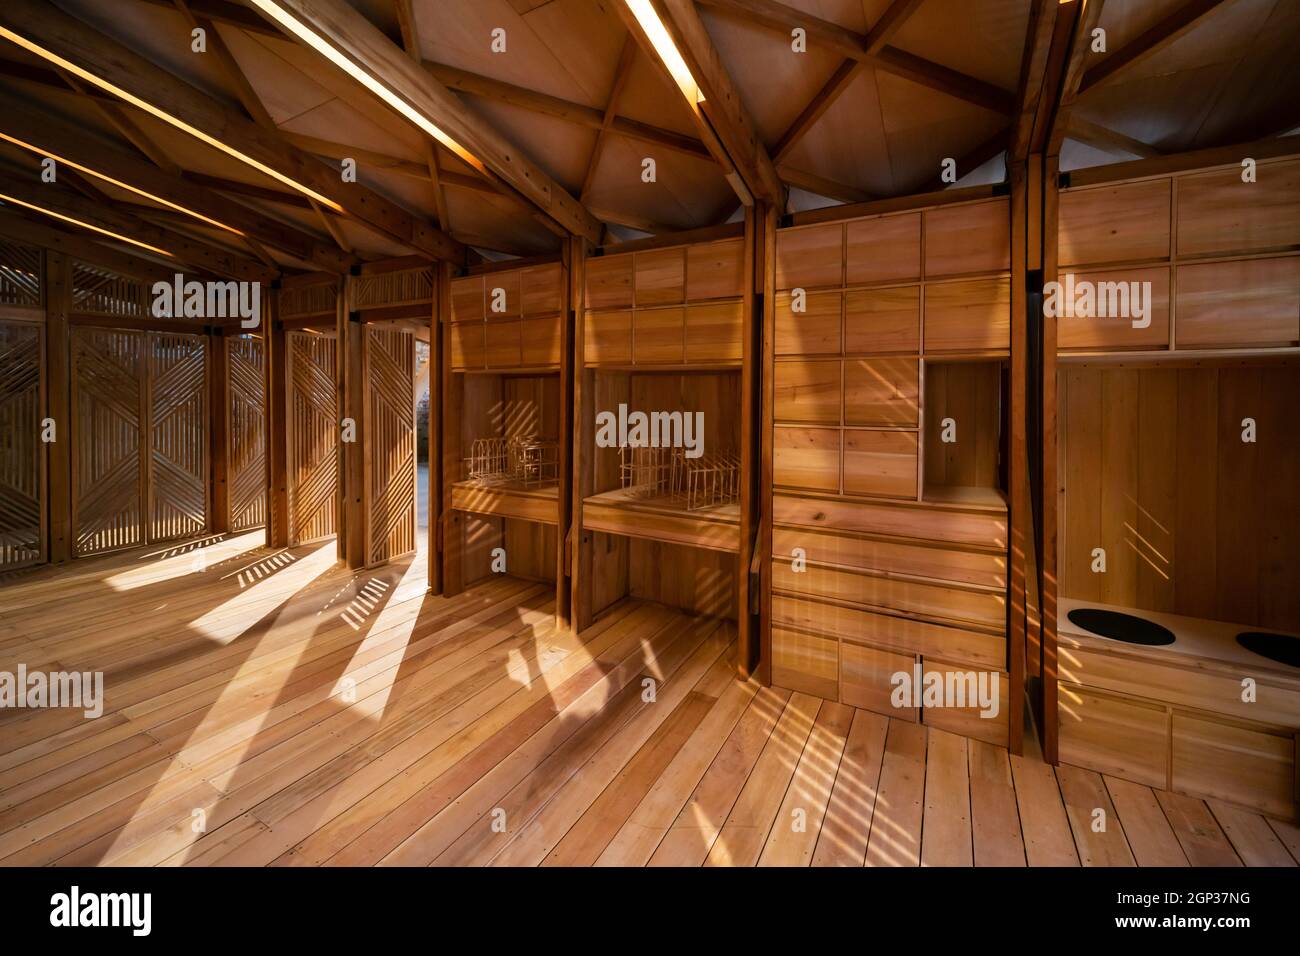 El Pabellón de Filipinas en la Bienal de Arquitectura de Venecia 2021 17th cuenta con un pequeño edificio de madera (una biblioteca) construido por voluntarios Foto de stock